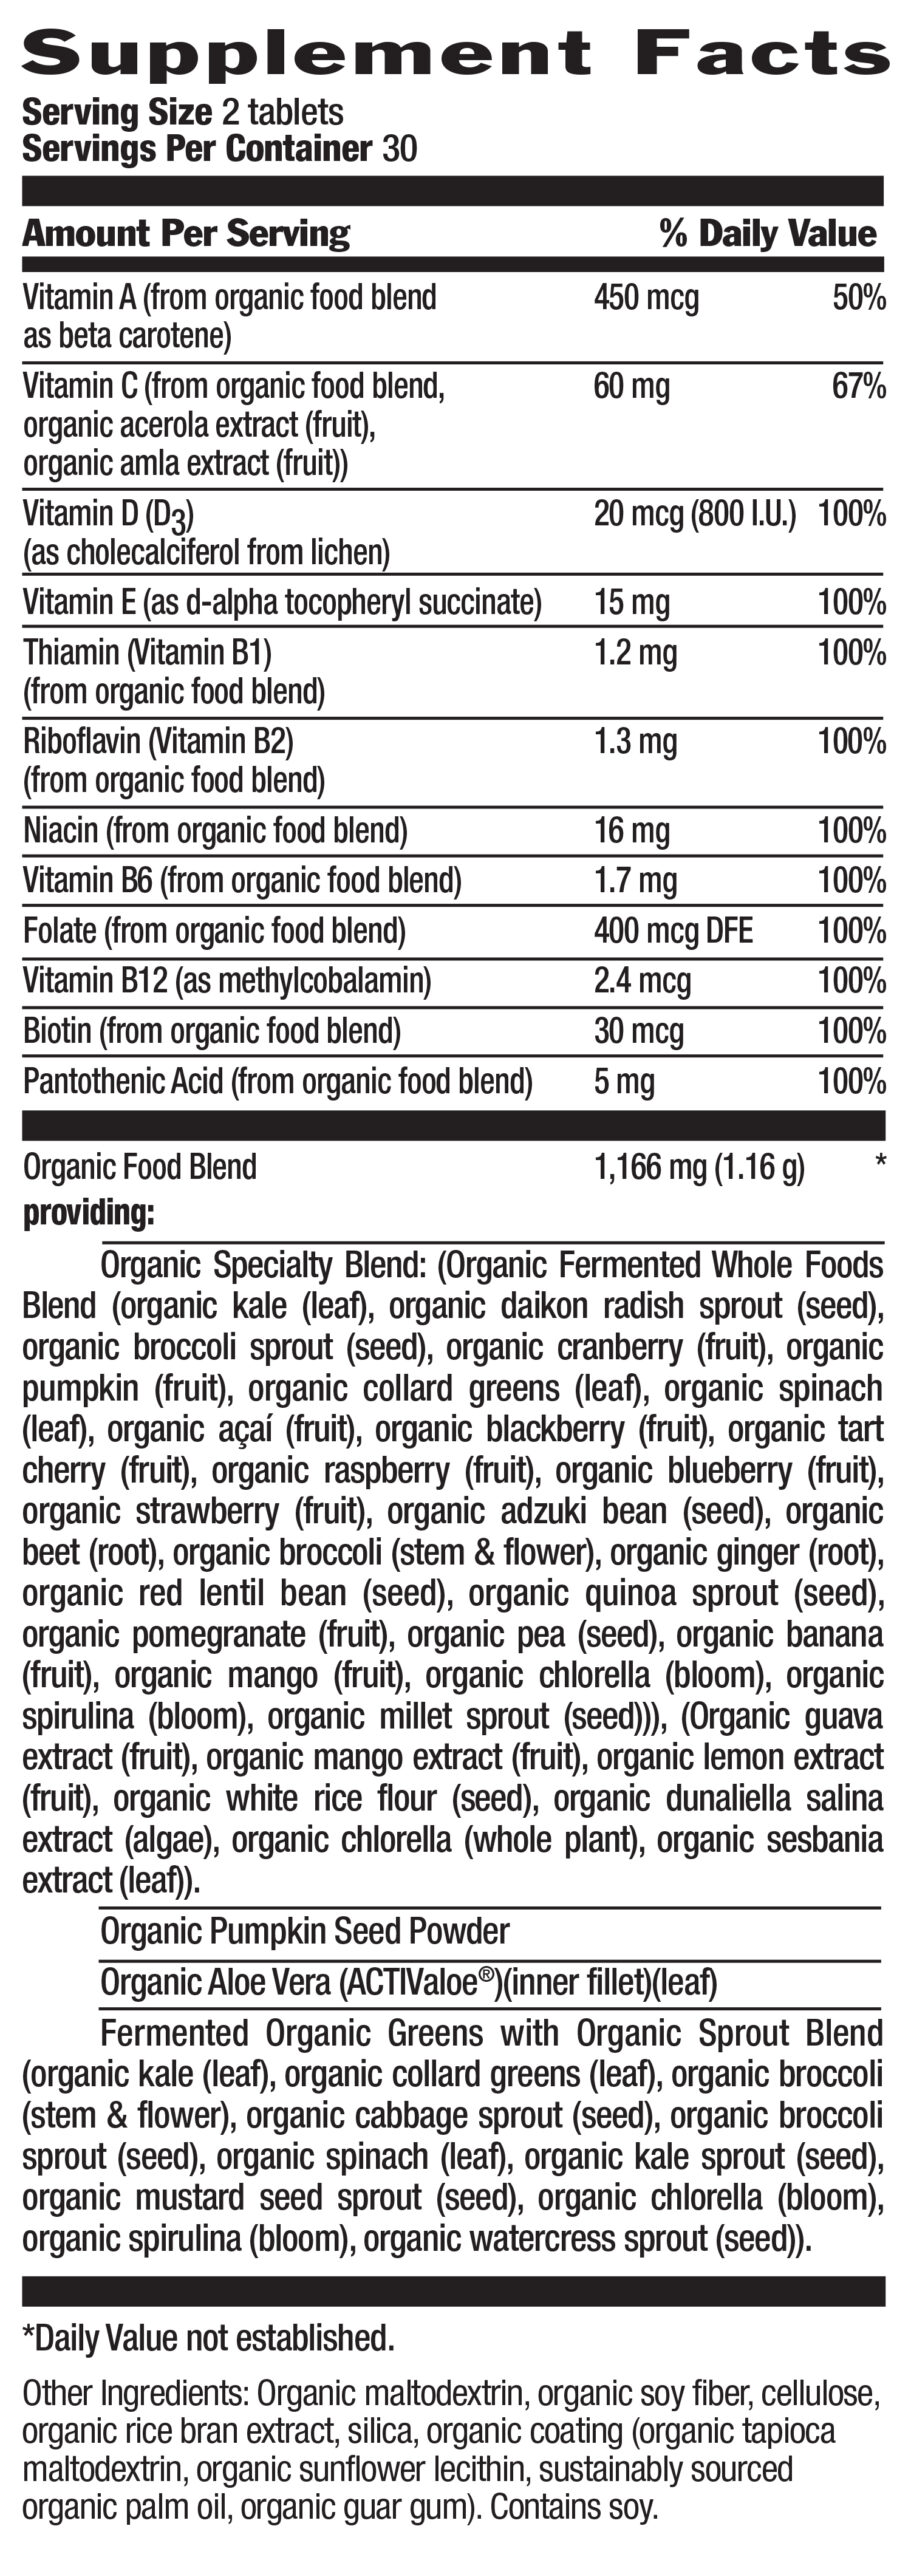 Realfood Organics® For Men